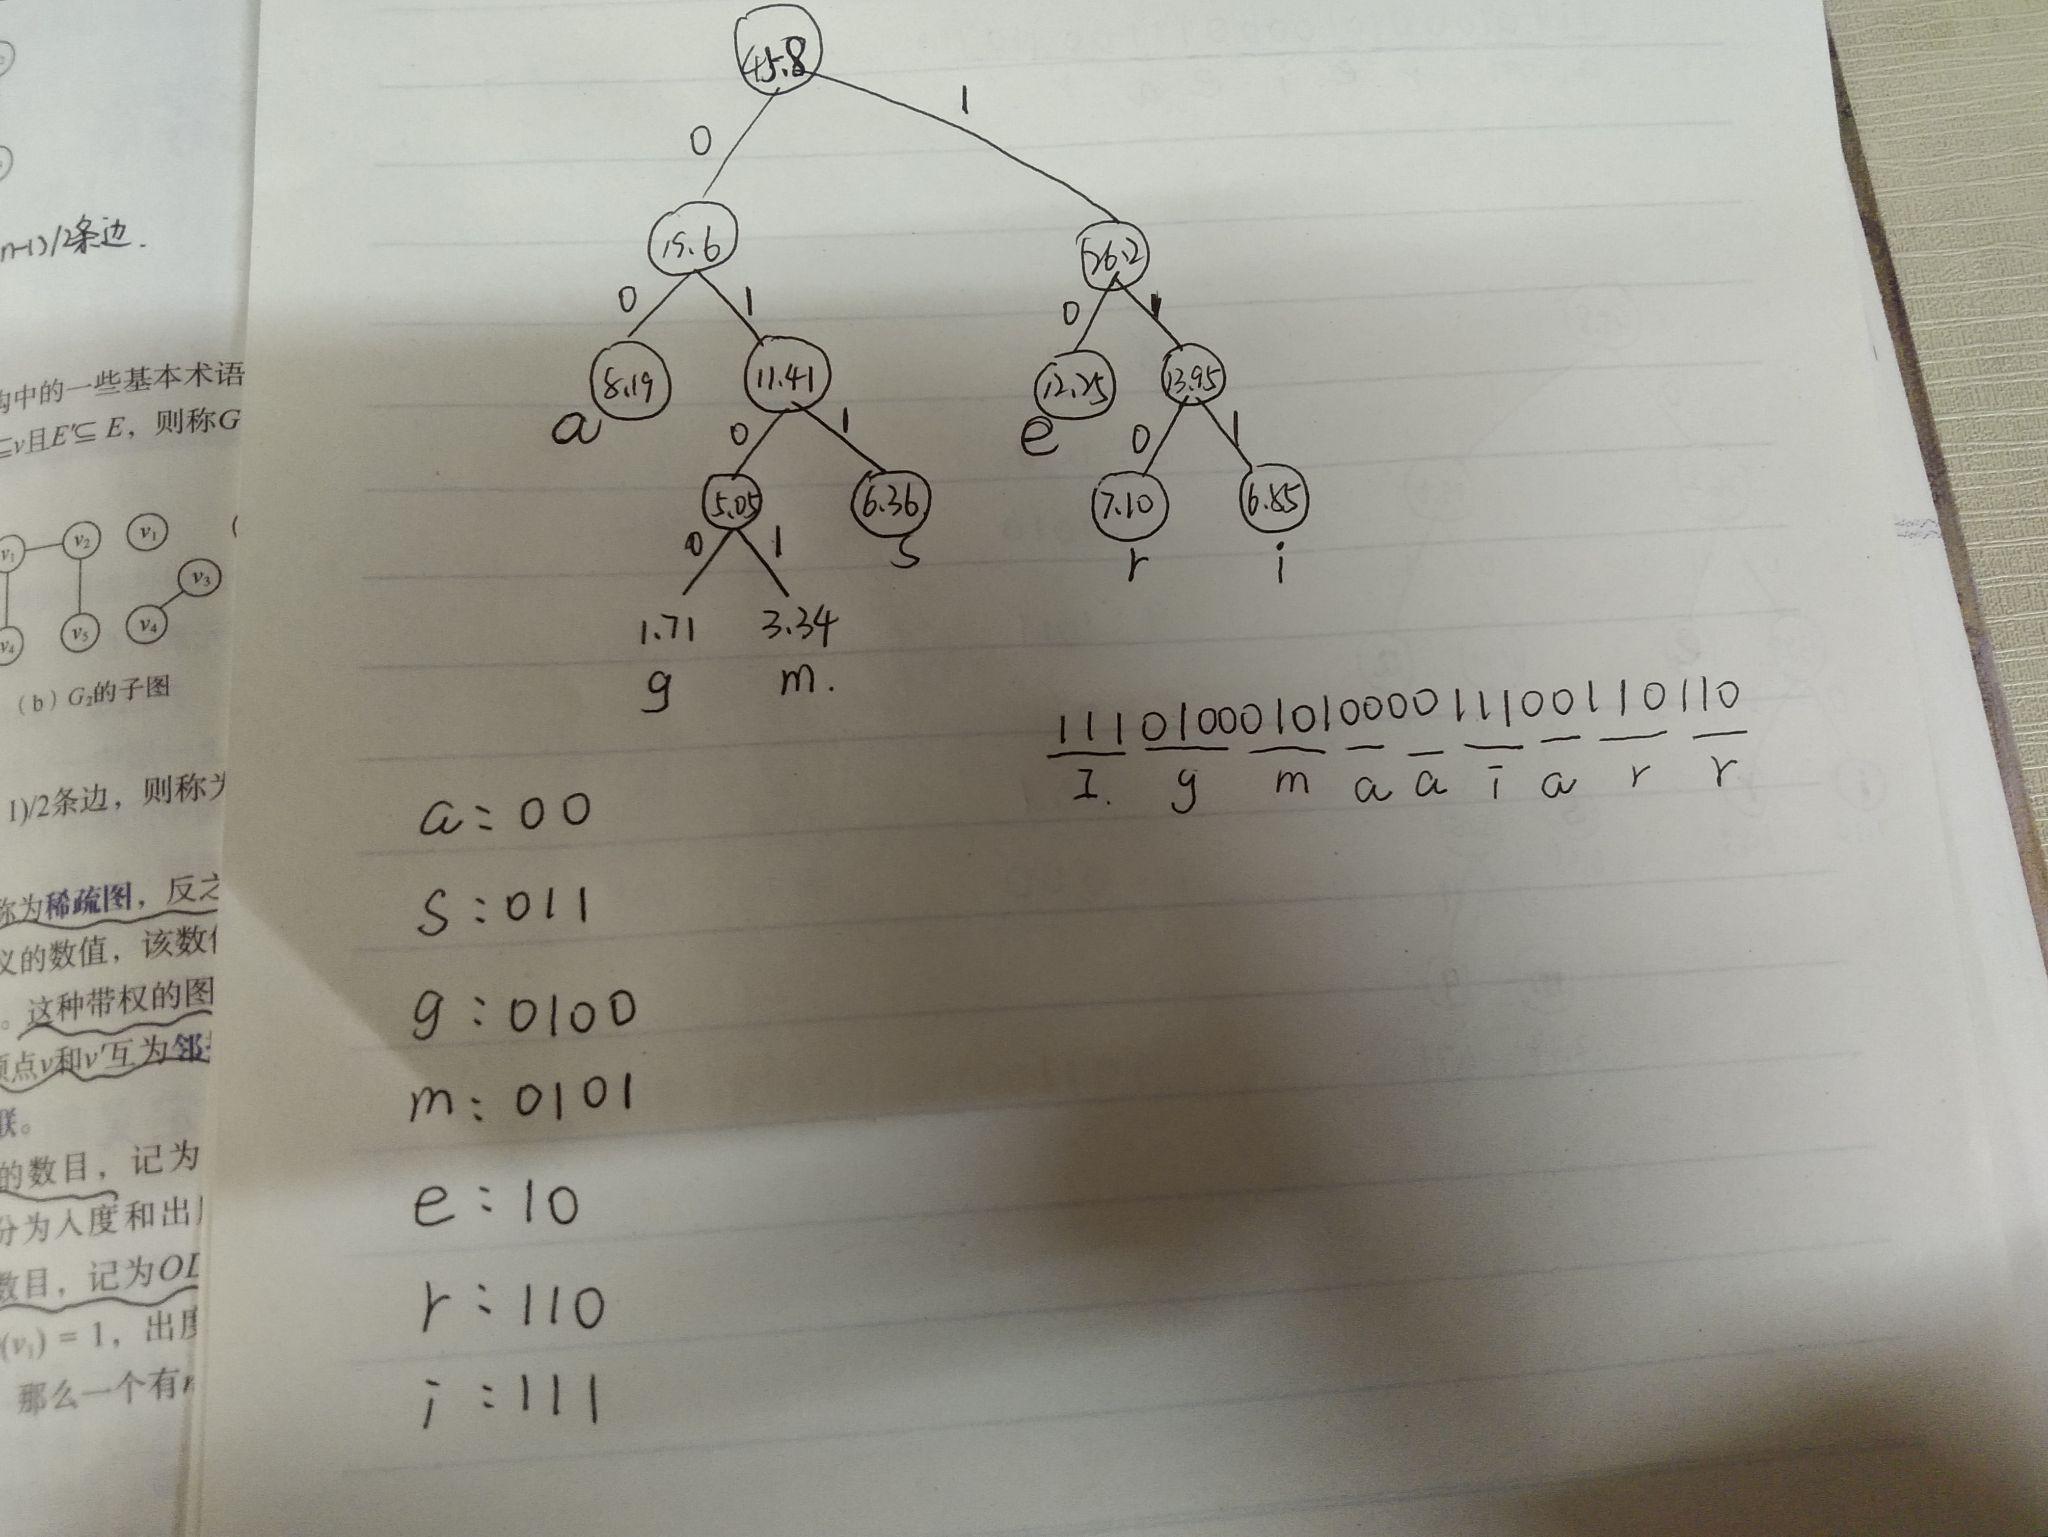 哈夫曼树编码数据结构课程设计答辩ppt_数据结构课程设计哈夫曼编码器